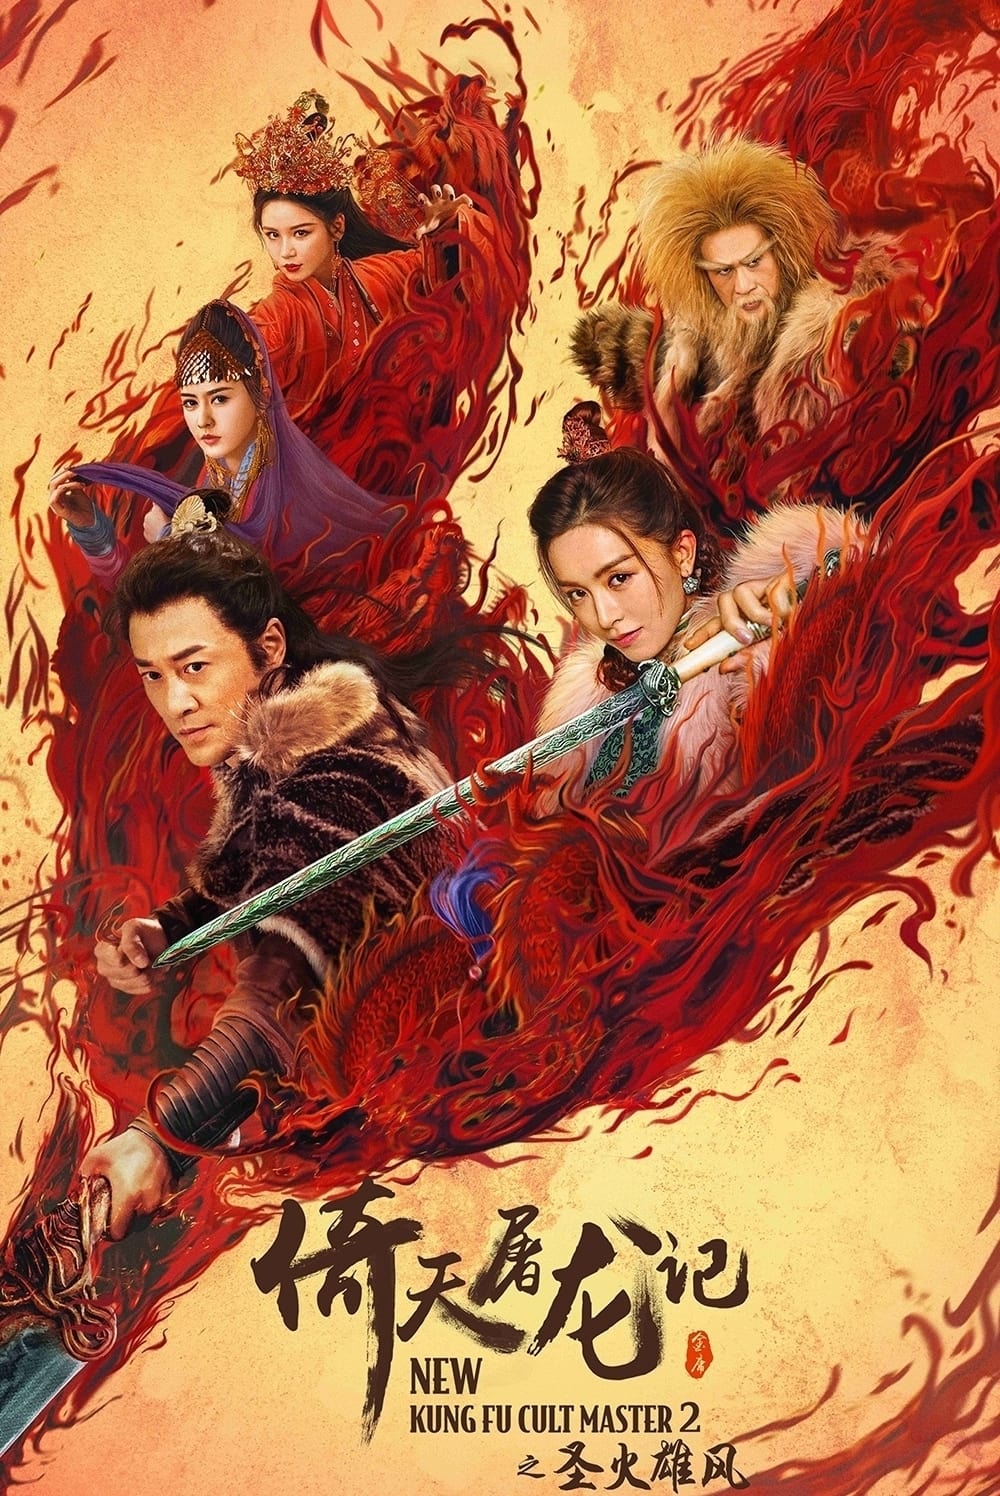 Banner Phim Ỷ Thiên Đồ Long Ký: Thánh Hỏa Hùng Phong (New Kung Fu Cult Master ⅠⅠ)